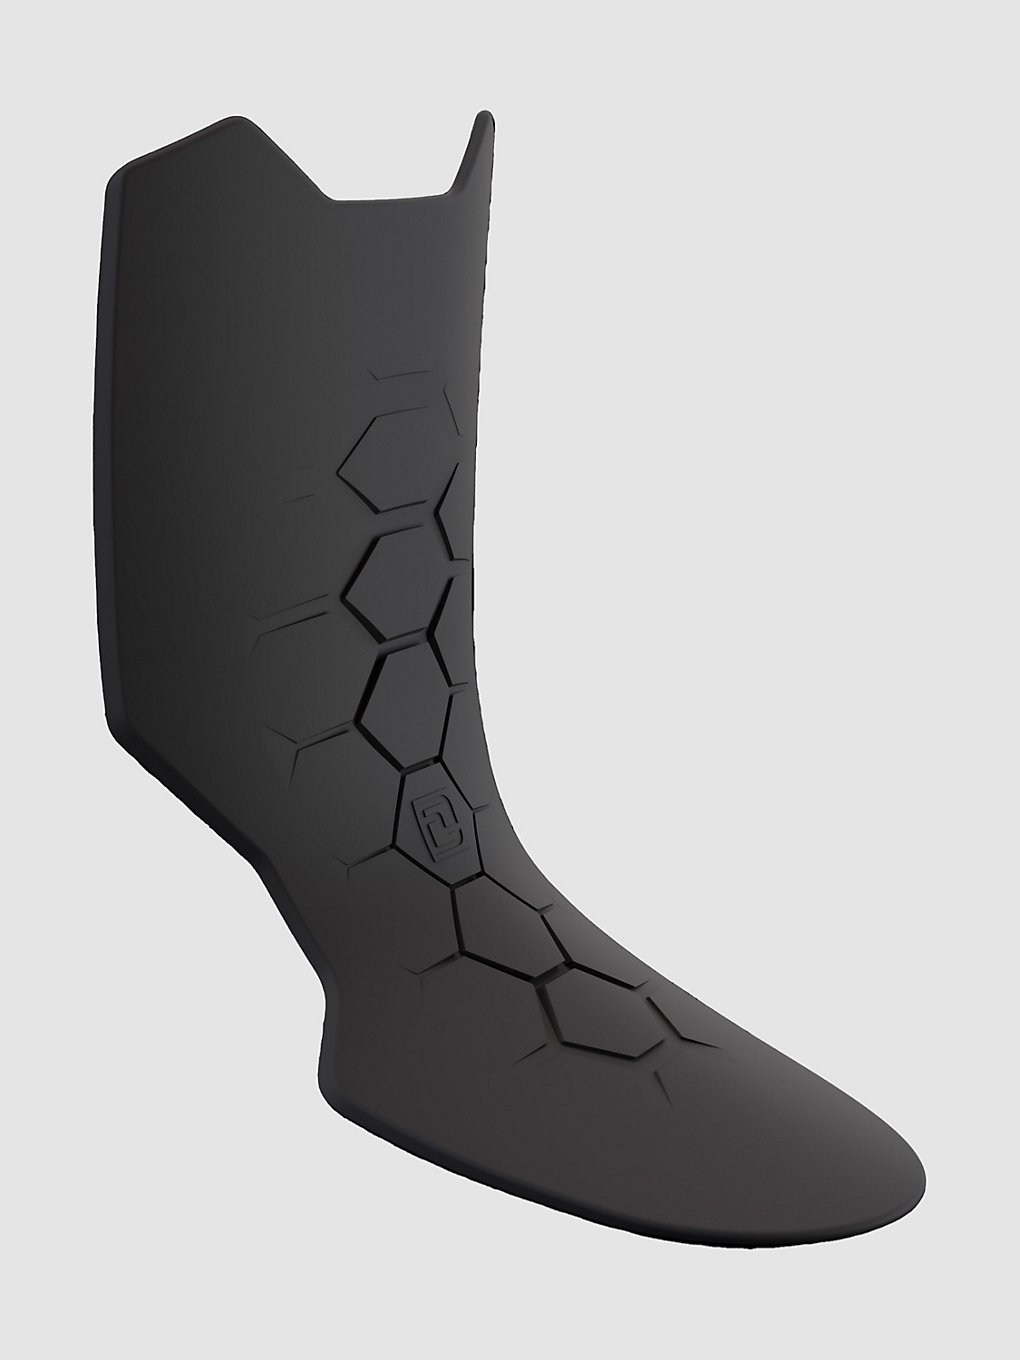 DEELUXE Flex Booster 2K Schnürsenkel black kaufen